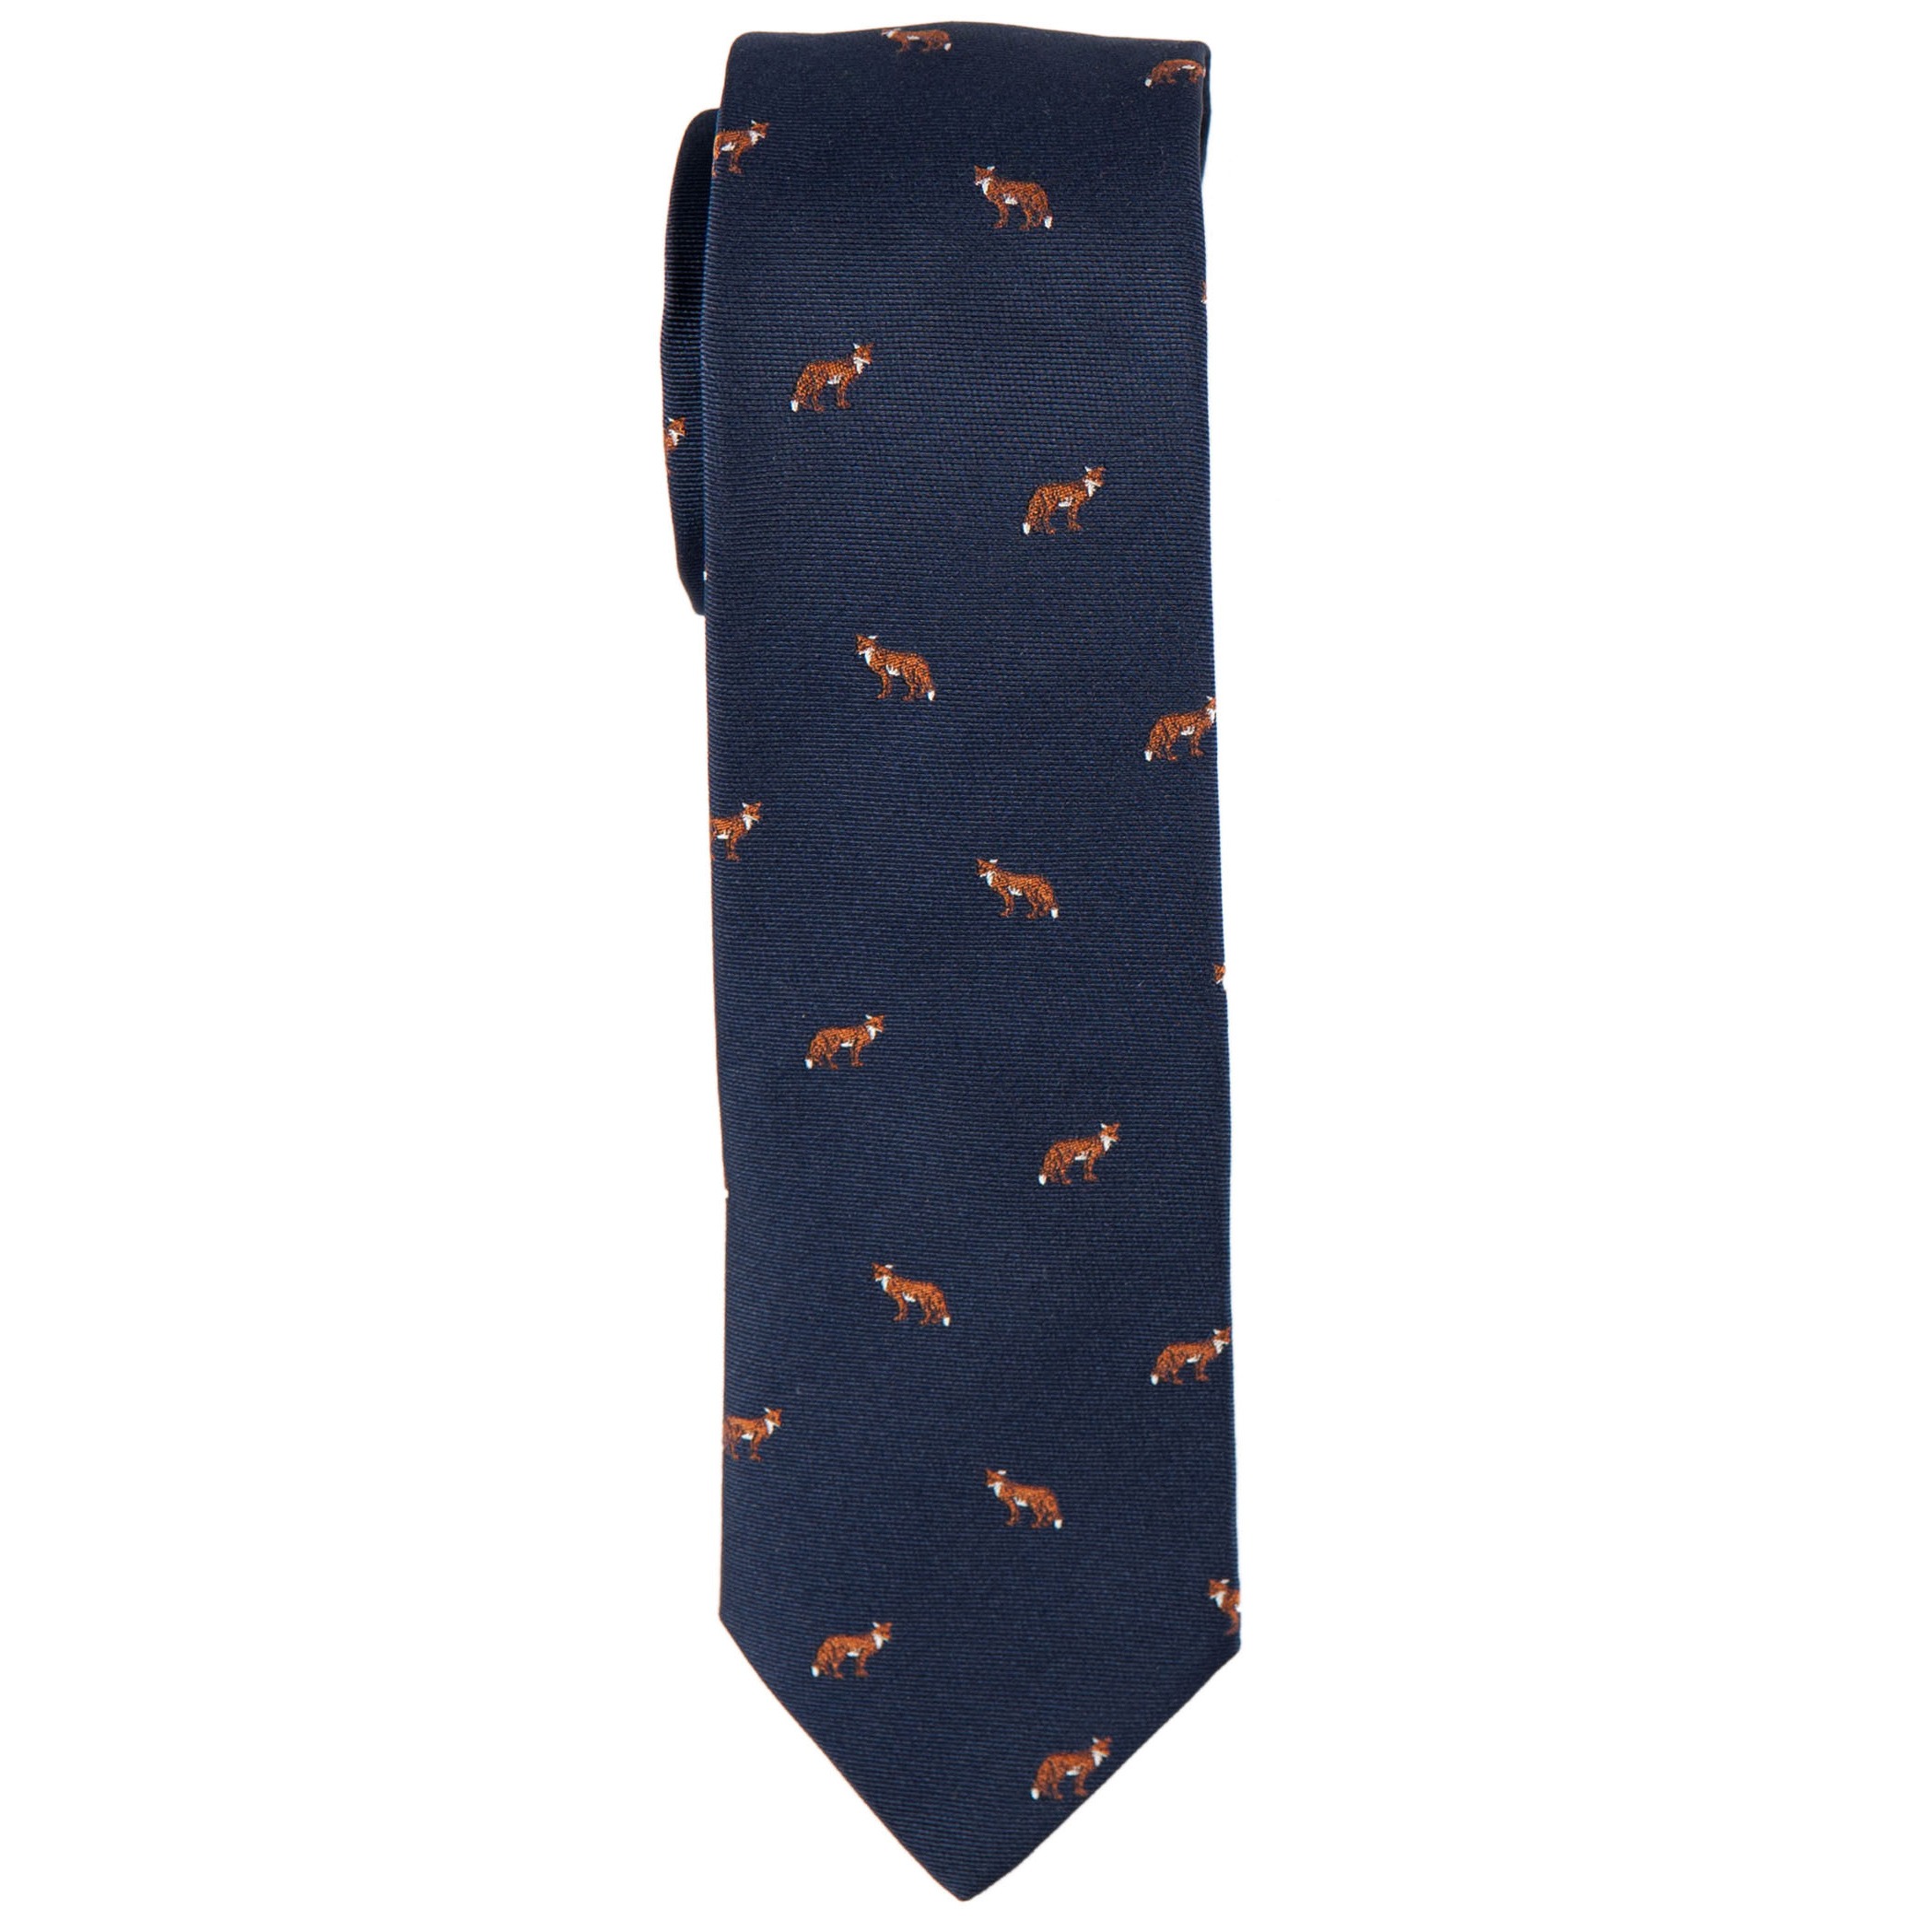 Krawatte mit Fuchs marine Fond eingewebt Accessoires Textile Ela Hubegger all-over auf 